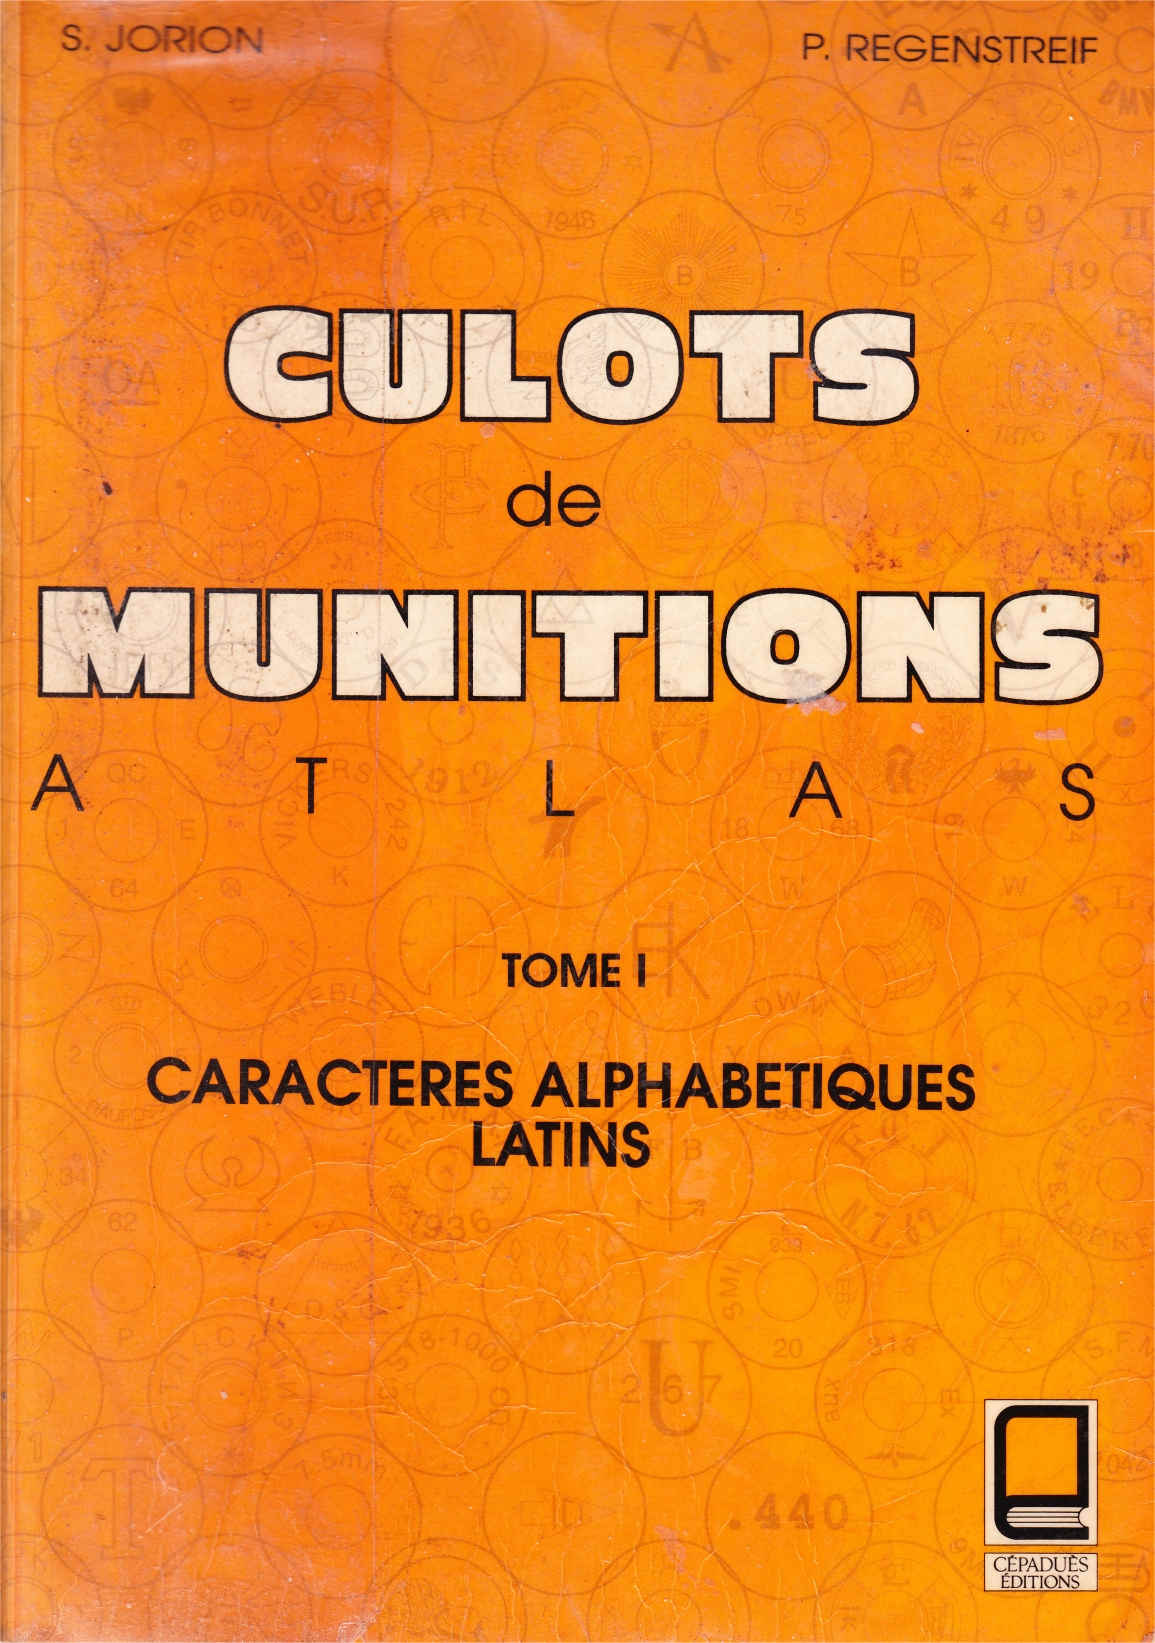 Culots de Munitions Atlas Tome 1